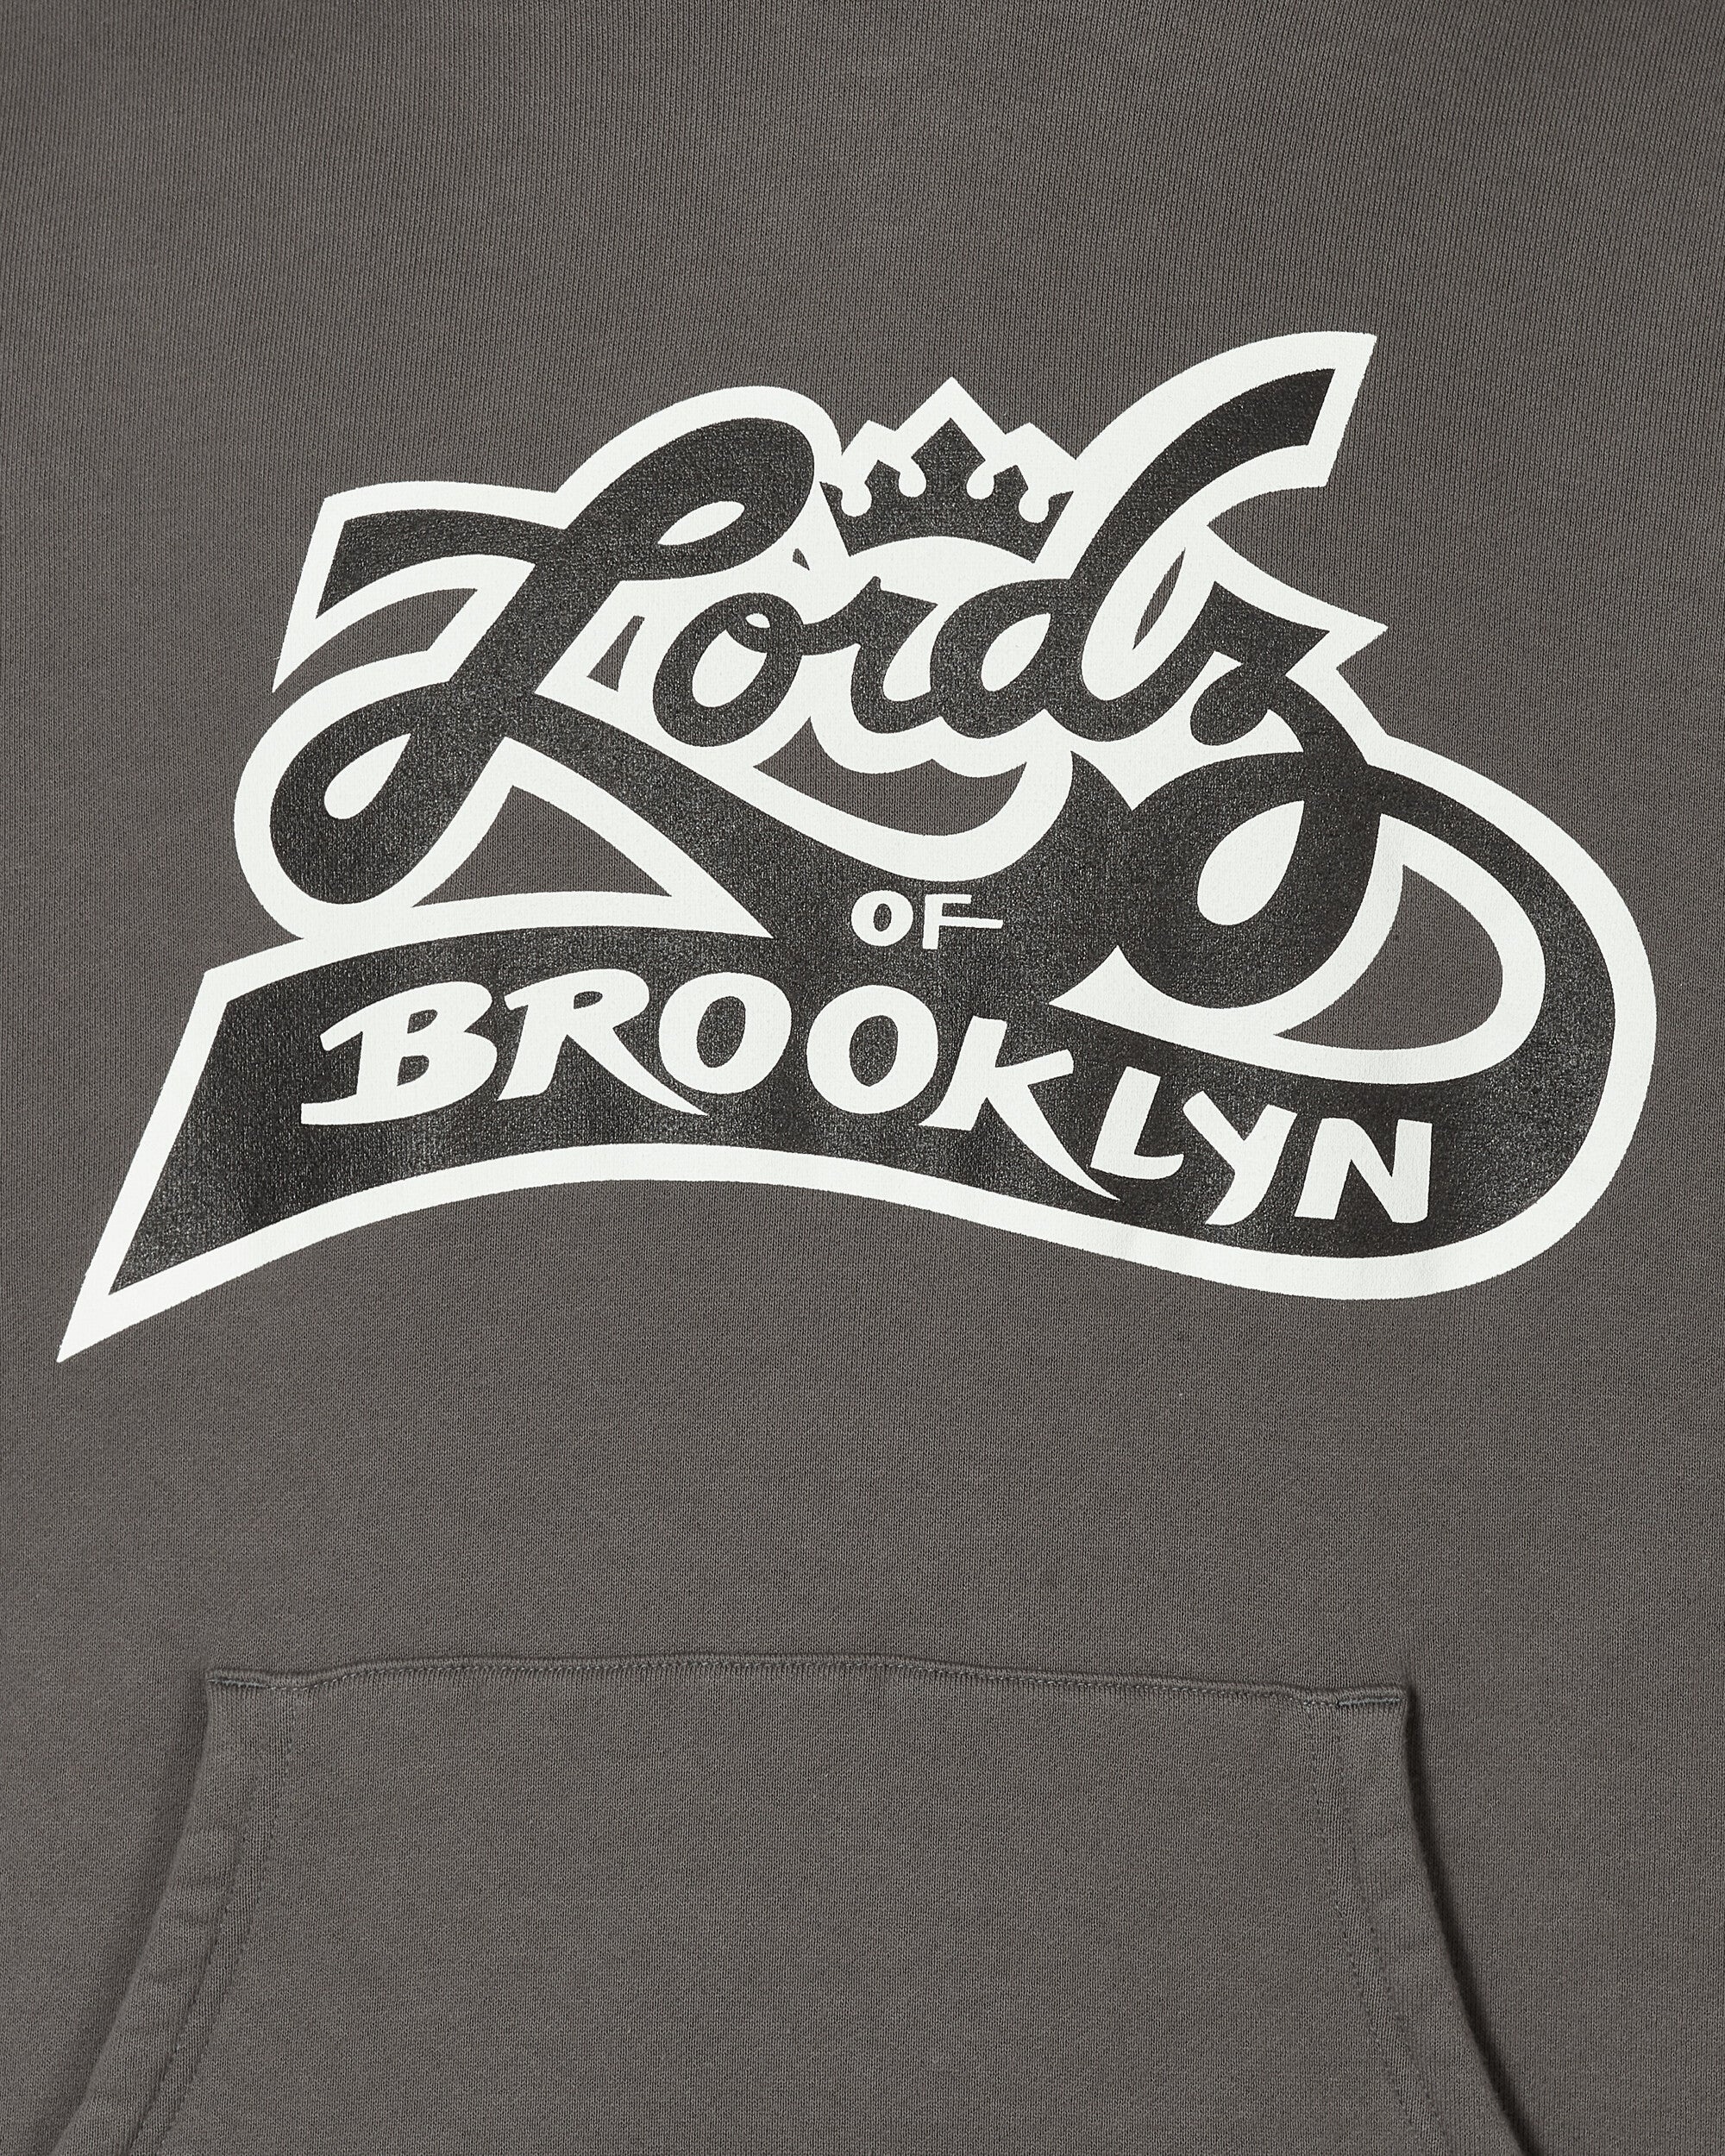 Lordz Of Brooklyn Hooded Sweatshirt Charcoal - 5